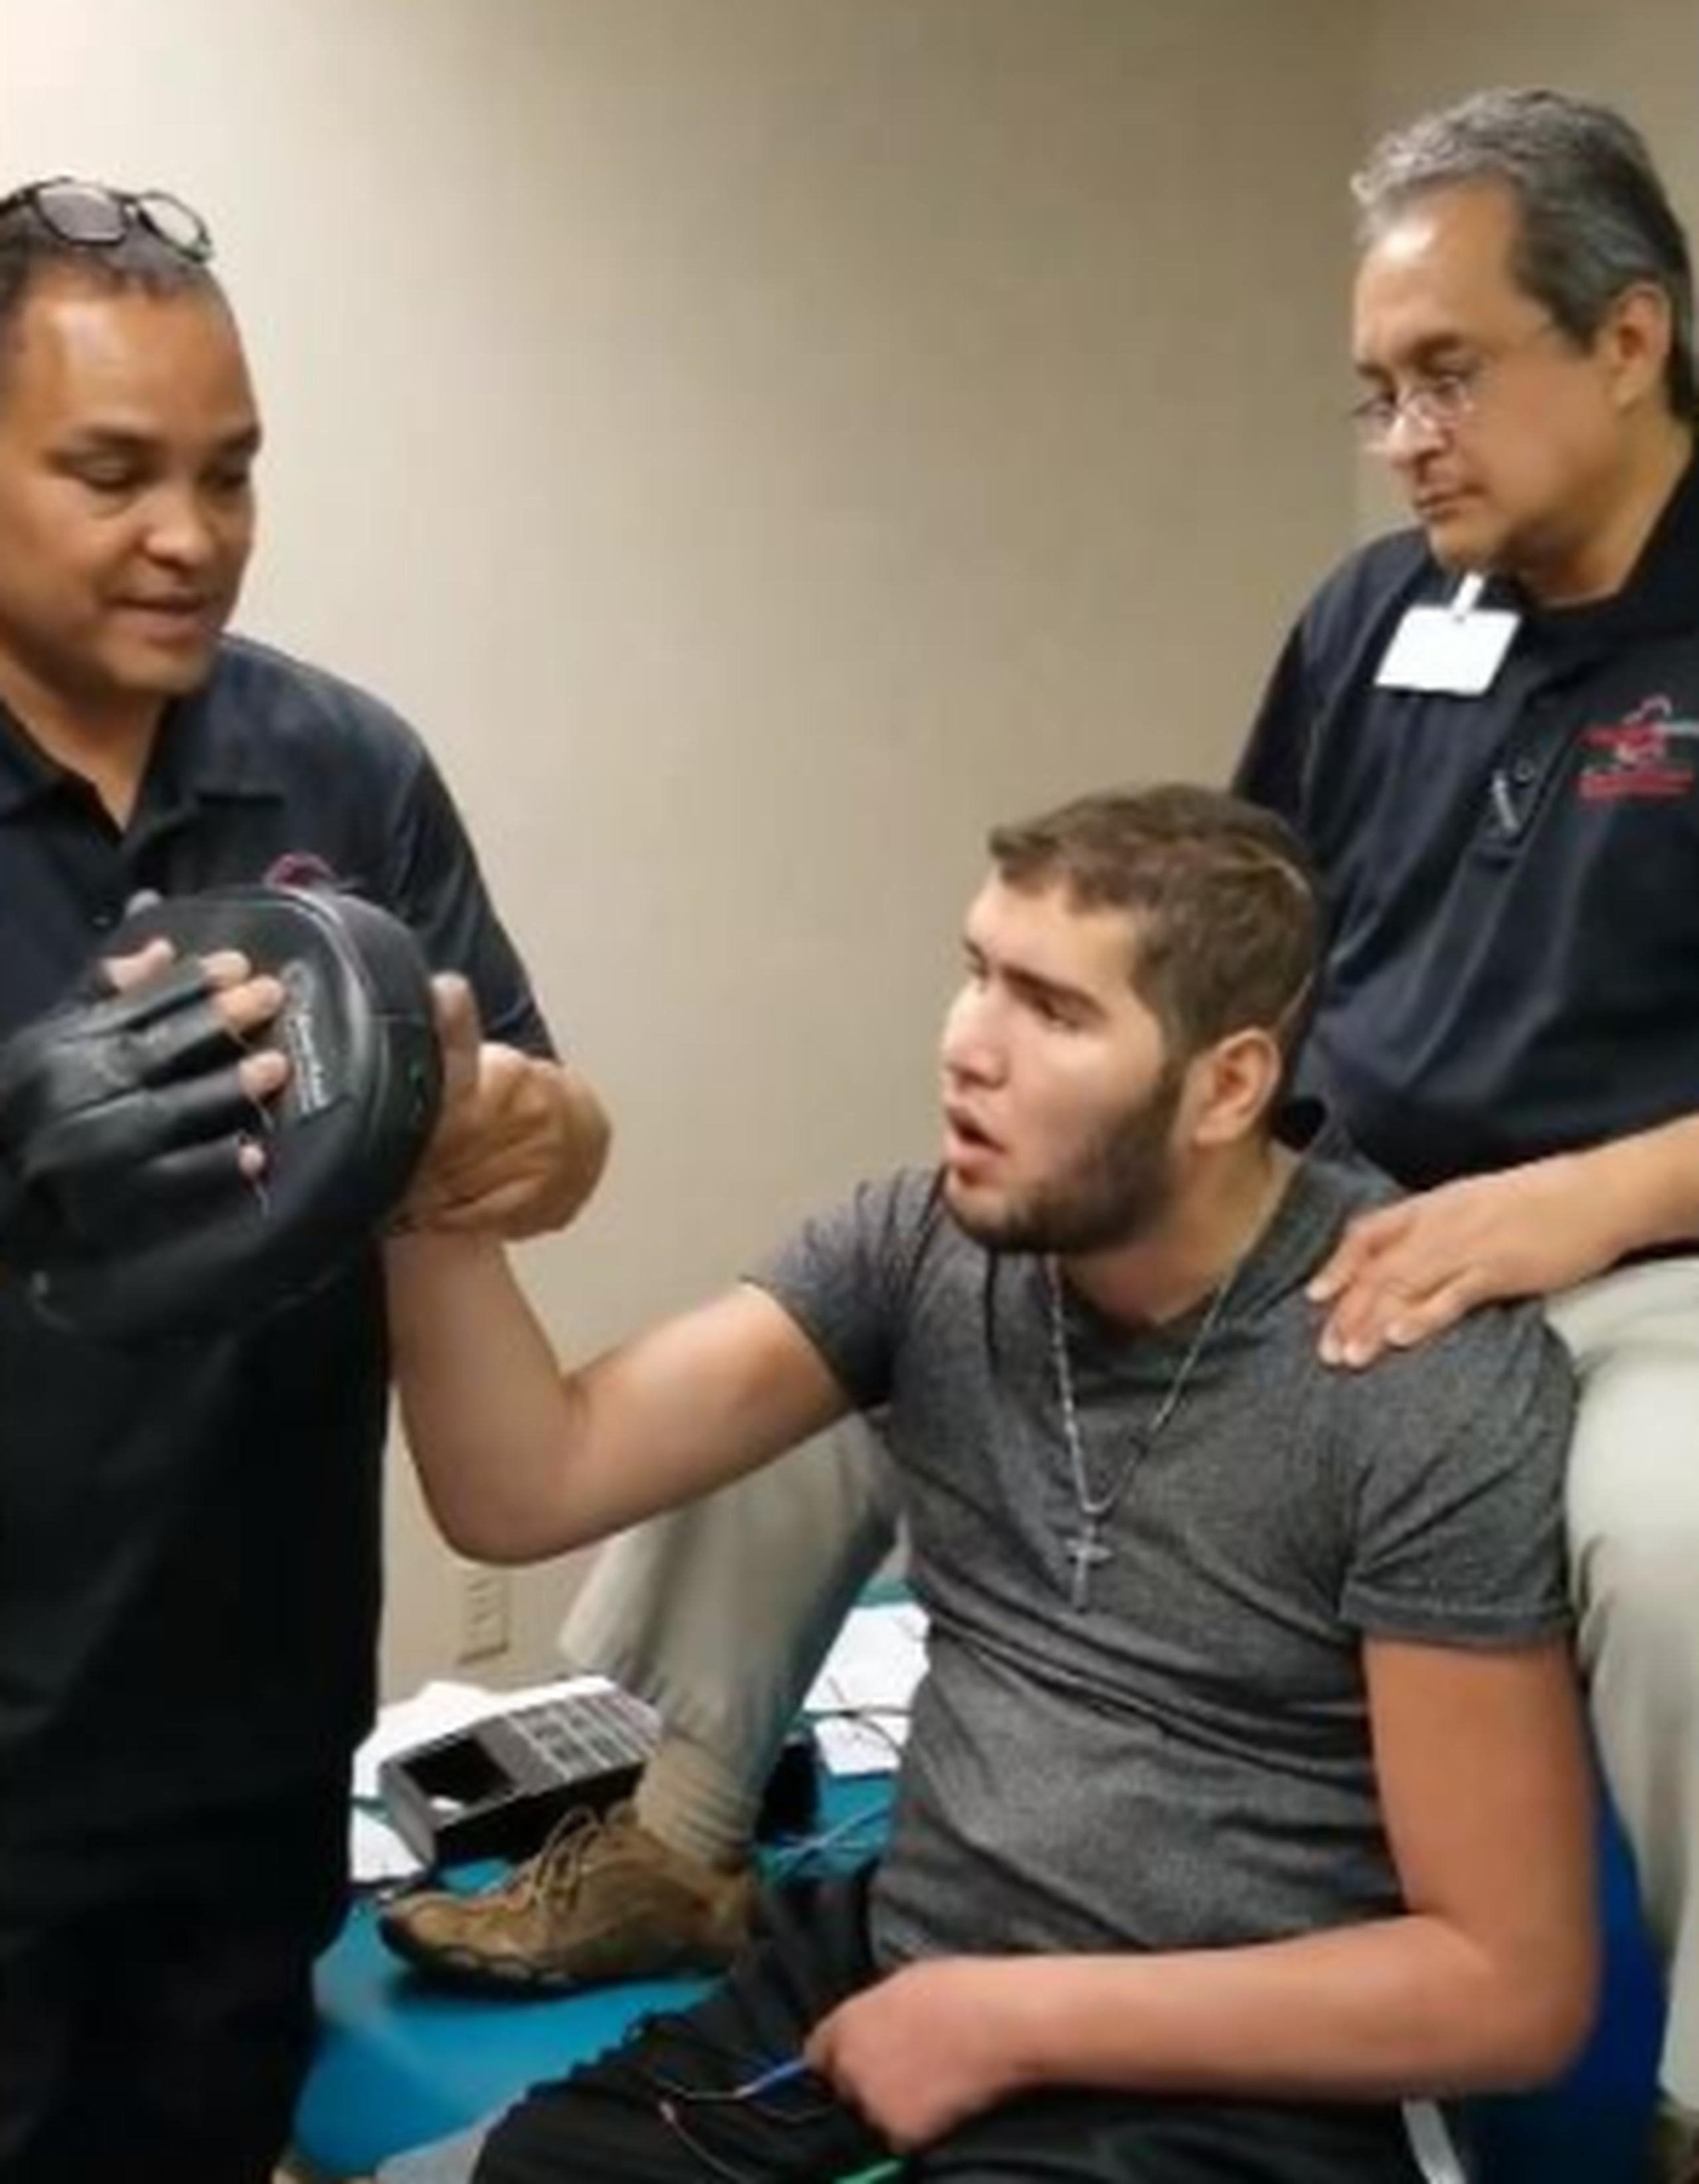 En octubre de 2015, Colón recibió varios golpes en la nuca durante una pelea que le causaron daños cerebrales. (Captura)